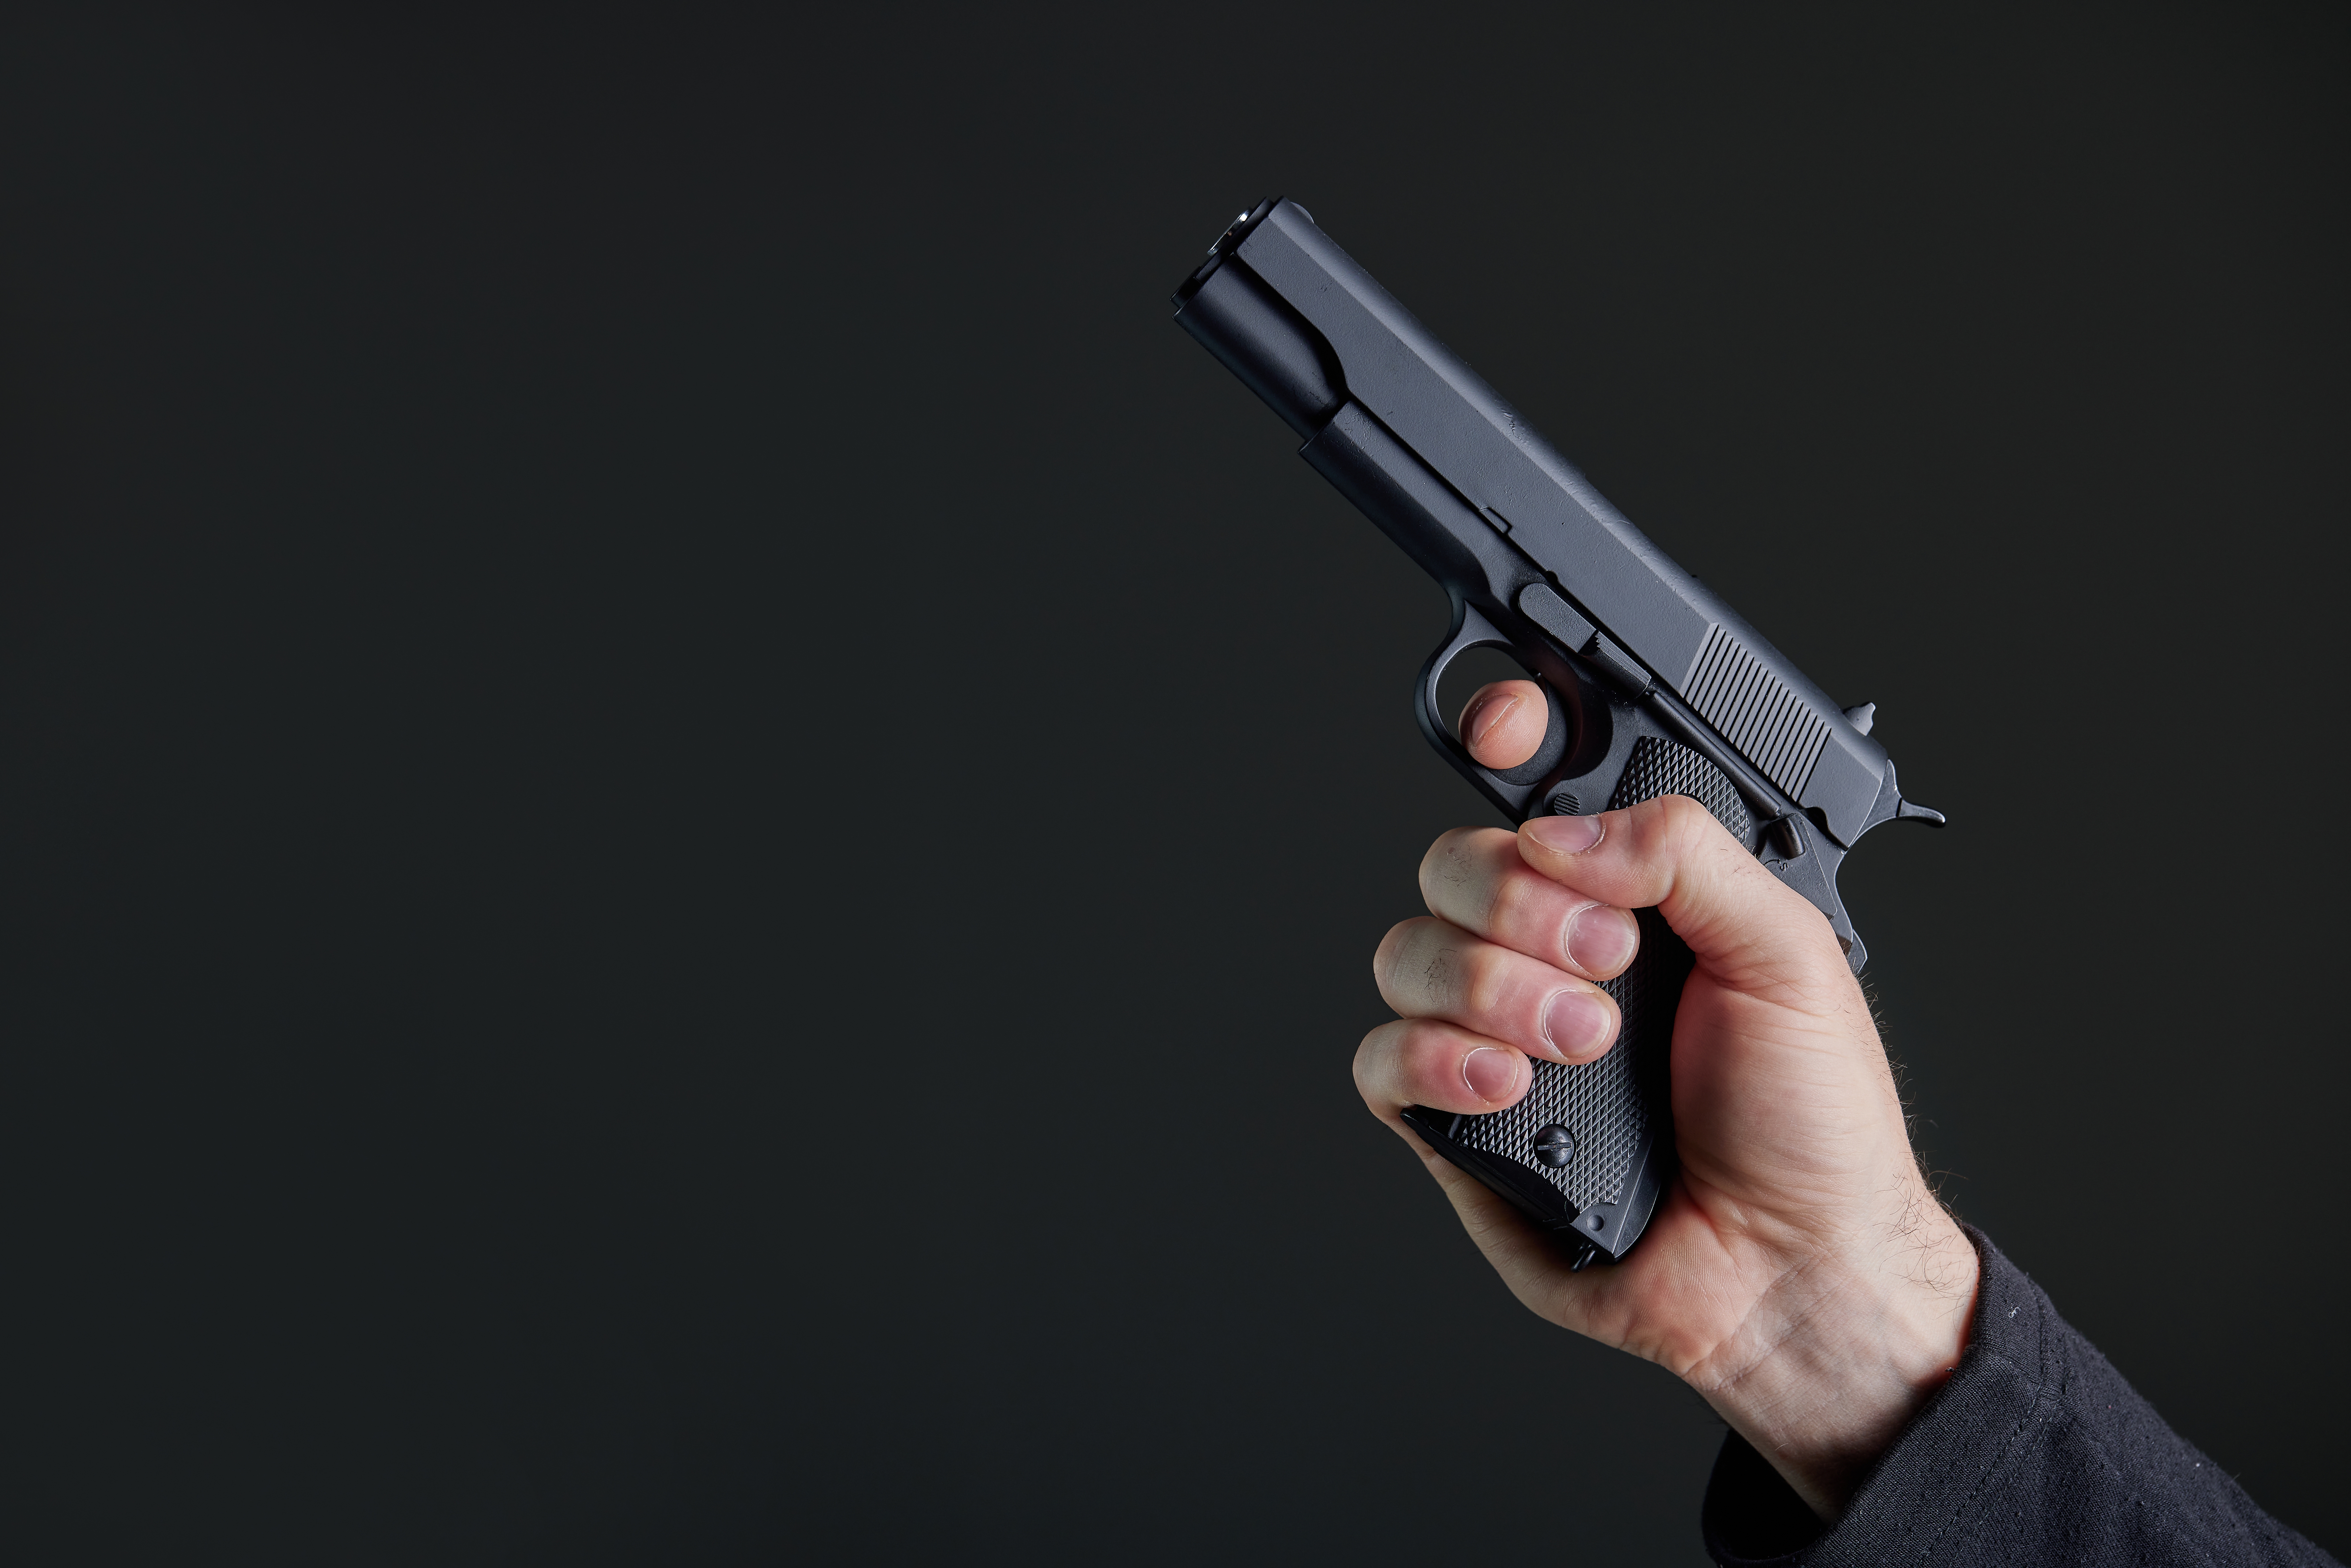 Male hand holding a gun | Source: Shutterstock